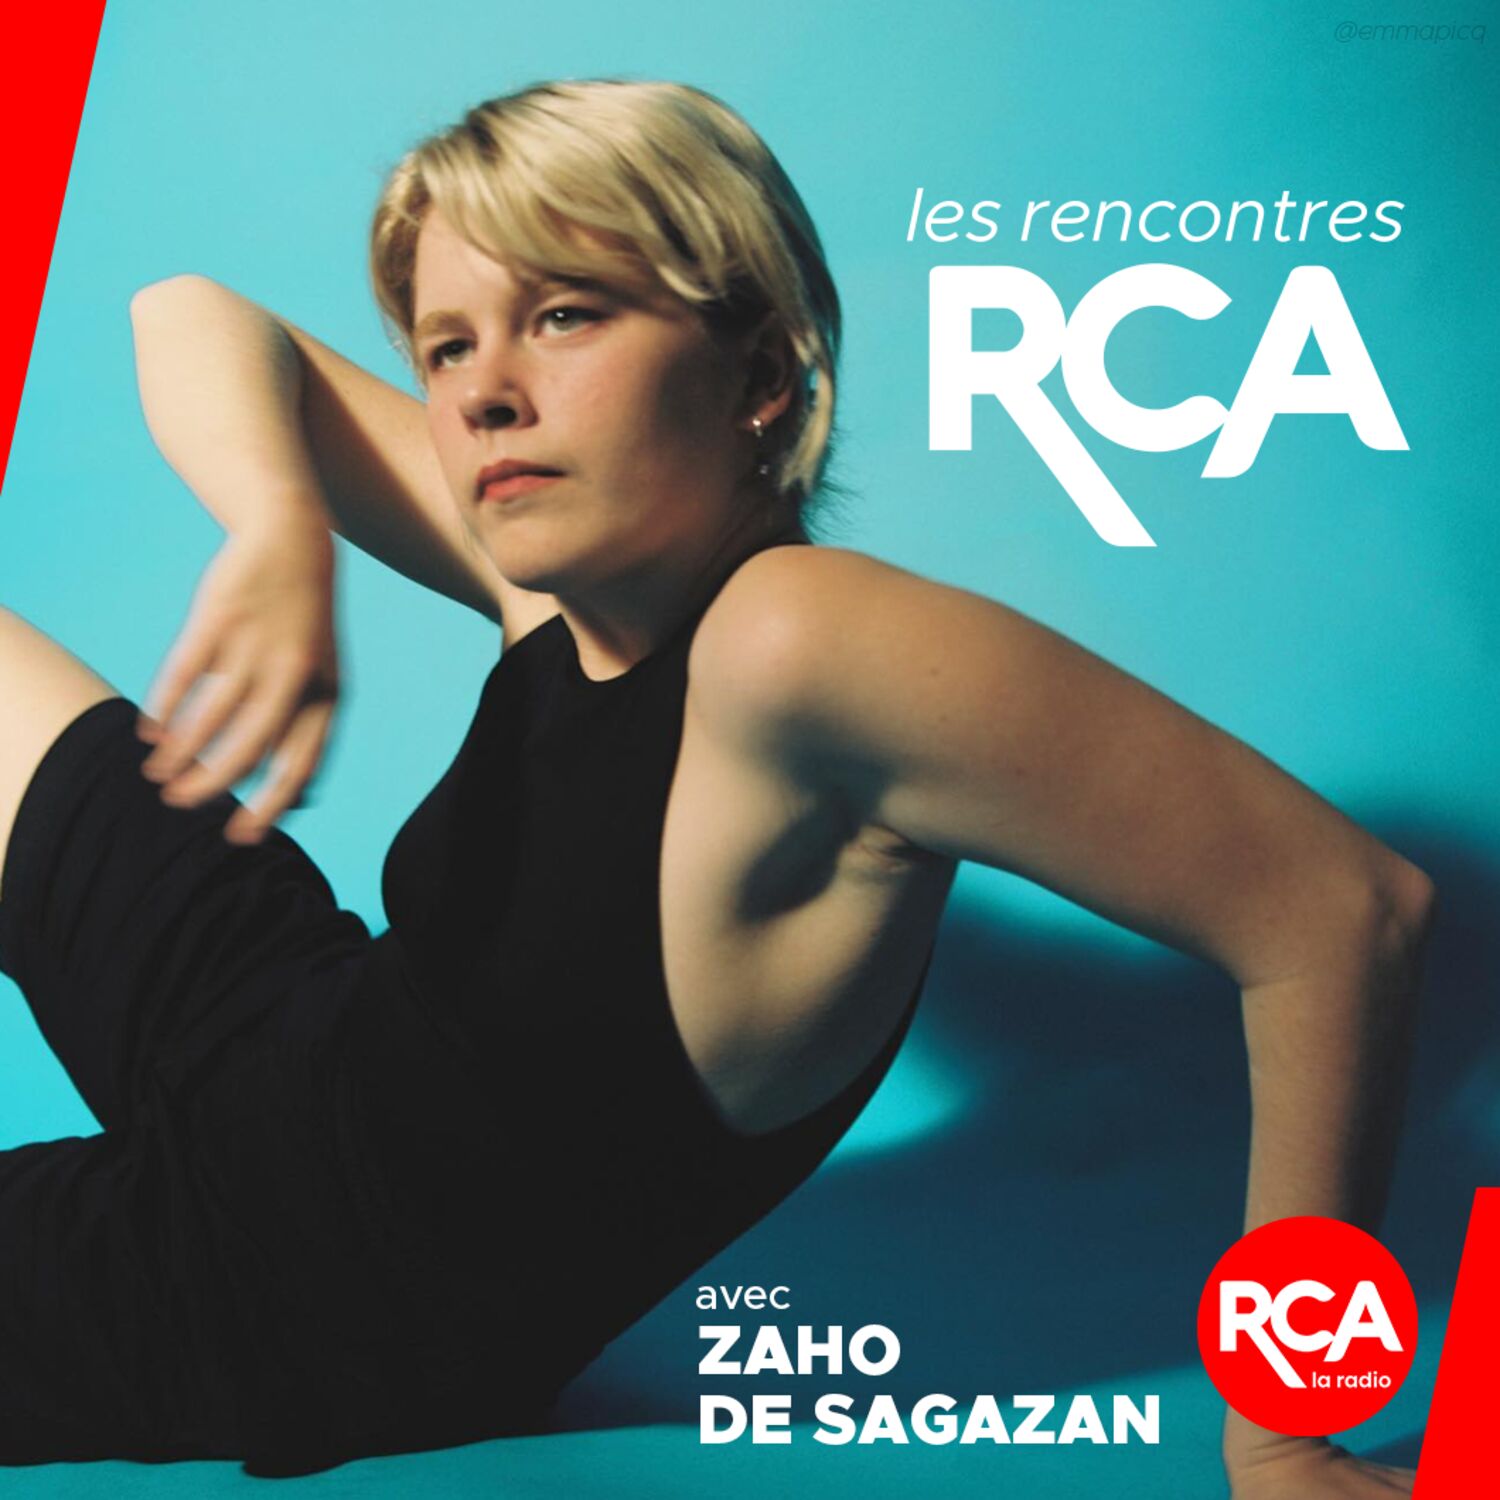 [EXTRAIT] Zaho de Sagazan dans les Rencontres RCA : "J'adore...